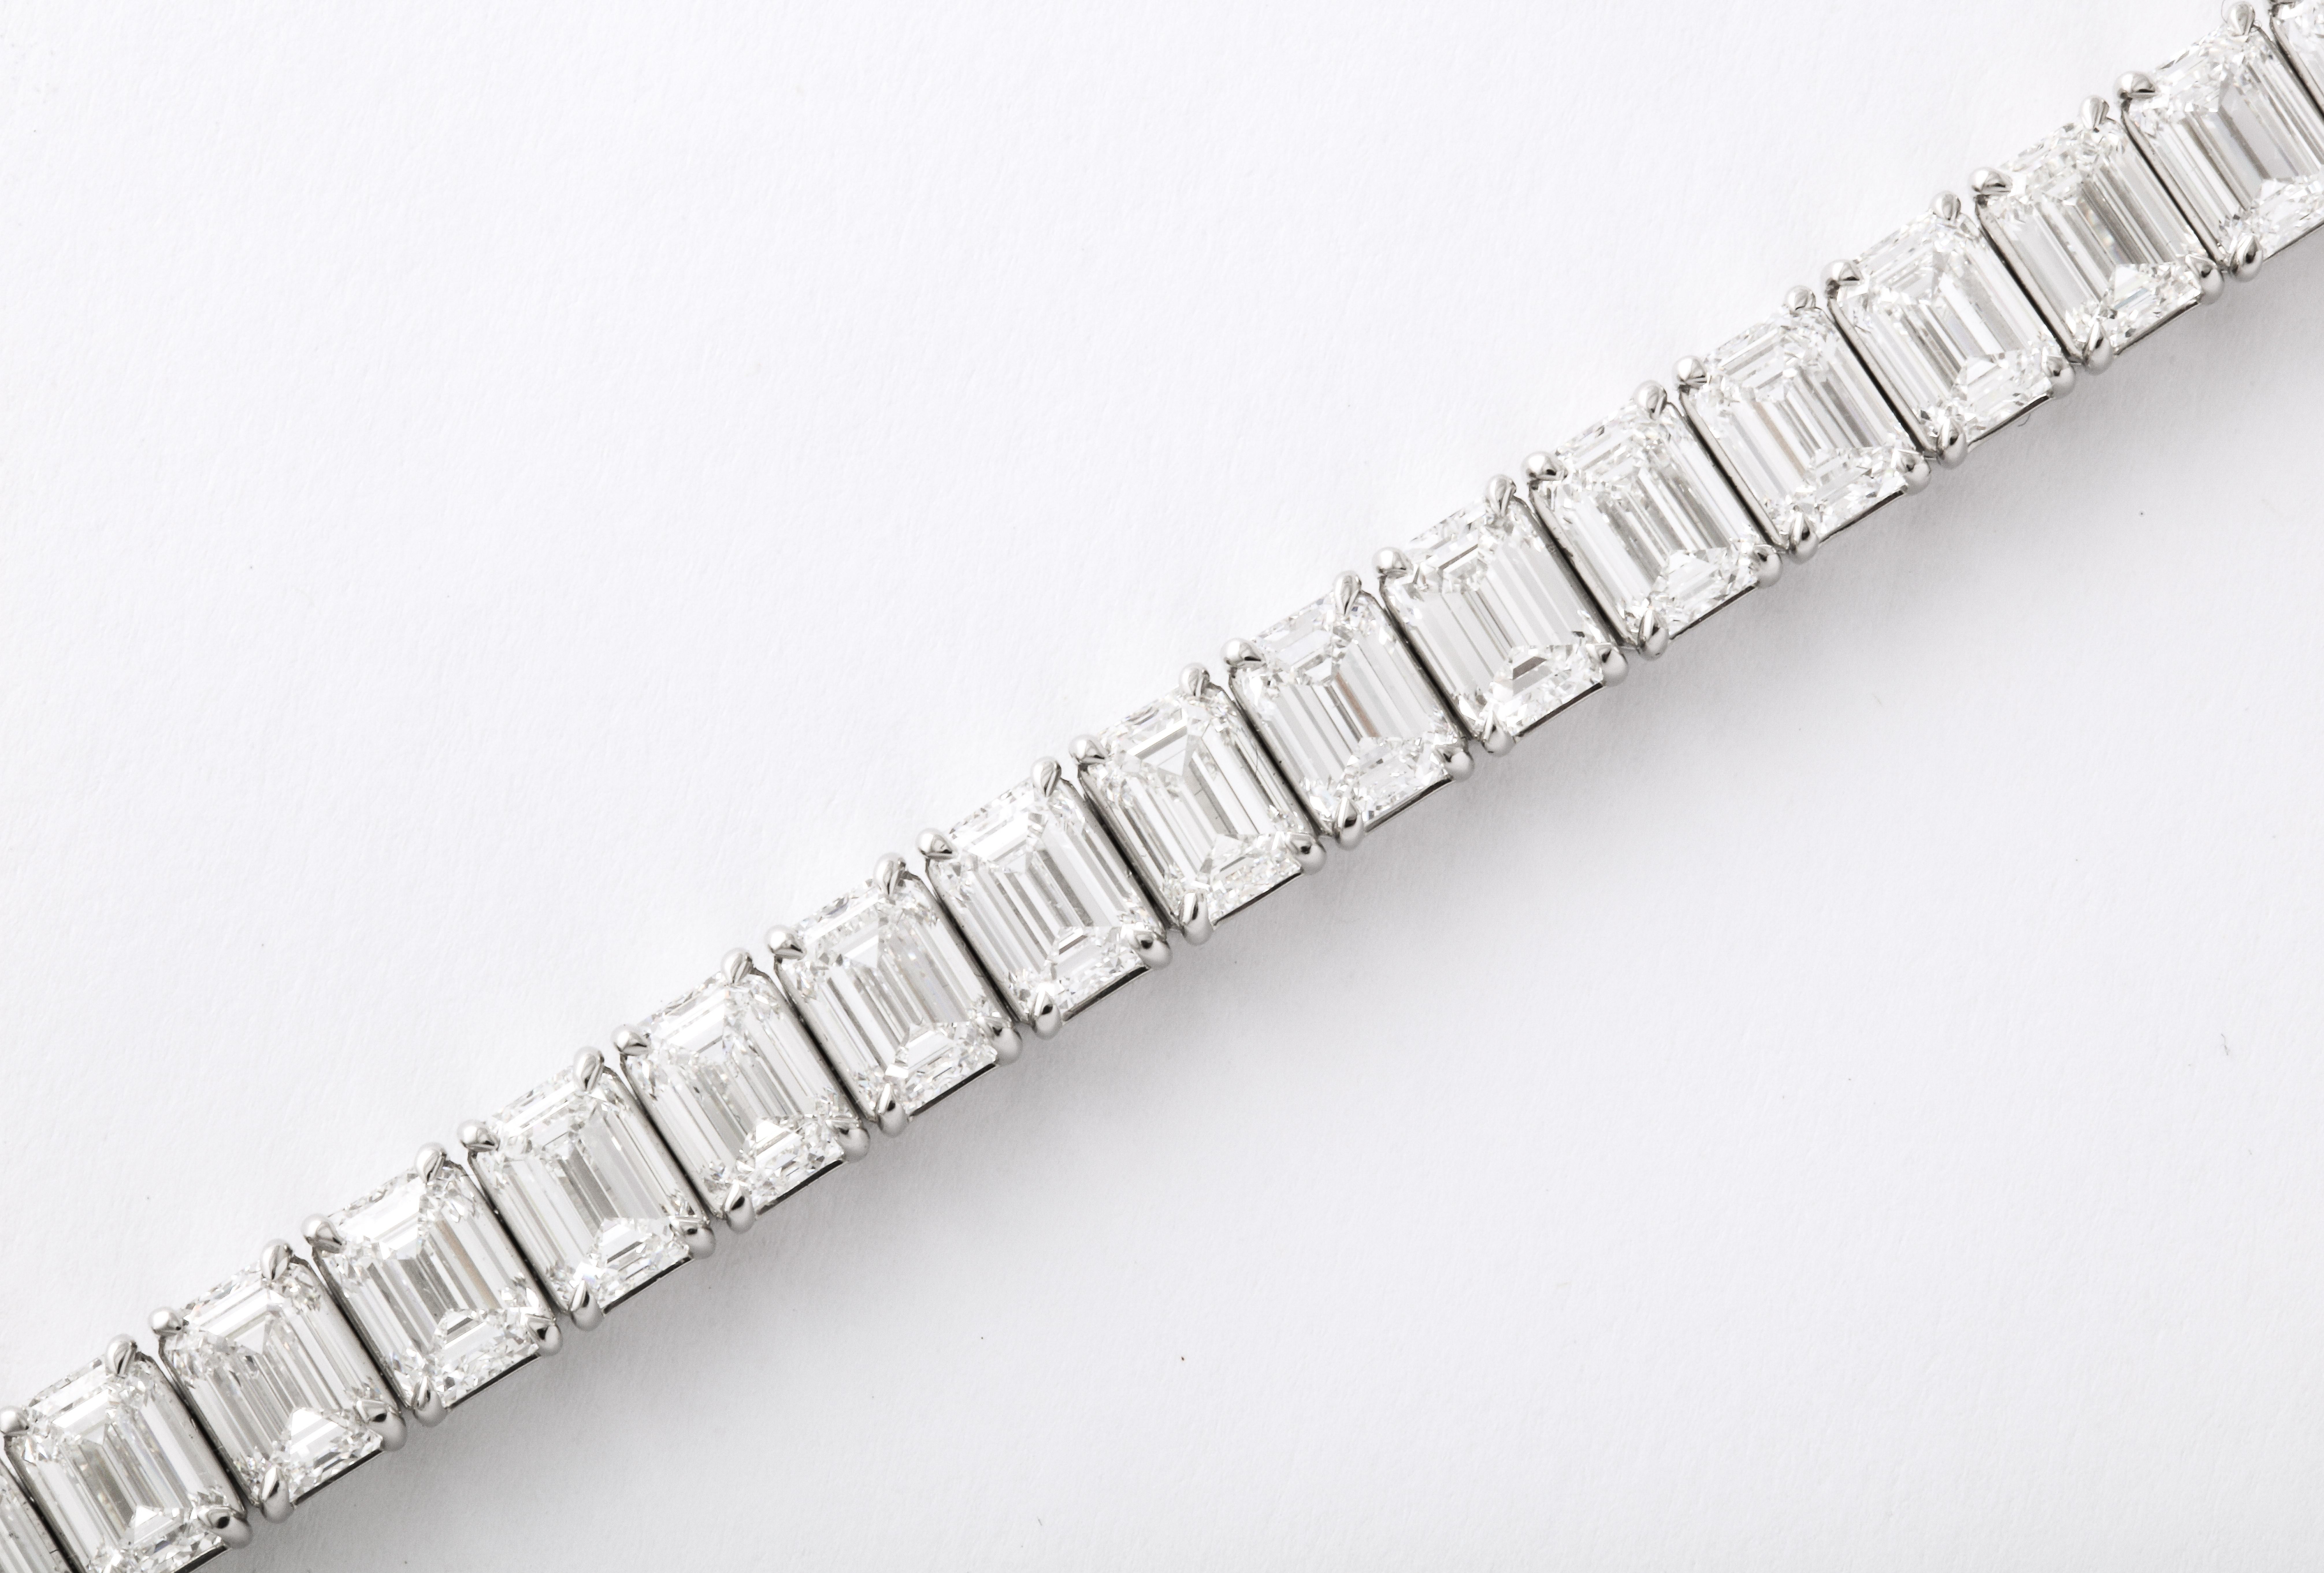 
Ein SENSATIONELLES Armband!

Eine wunderschöne Anordnung von GIA-zertifizierten Diamanten, alle mit idealen Abmessungen - insgesamt 37 Diamanten im Smaragdschliff mit einem Gewicht von 26,81 Karat!

GIA-zertifizierte Diamanten der Farbe DEF und der